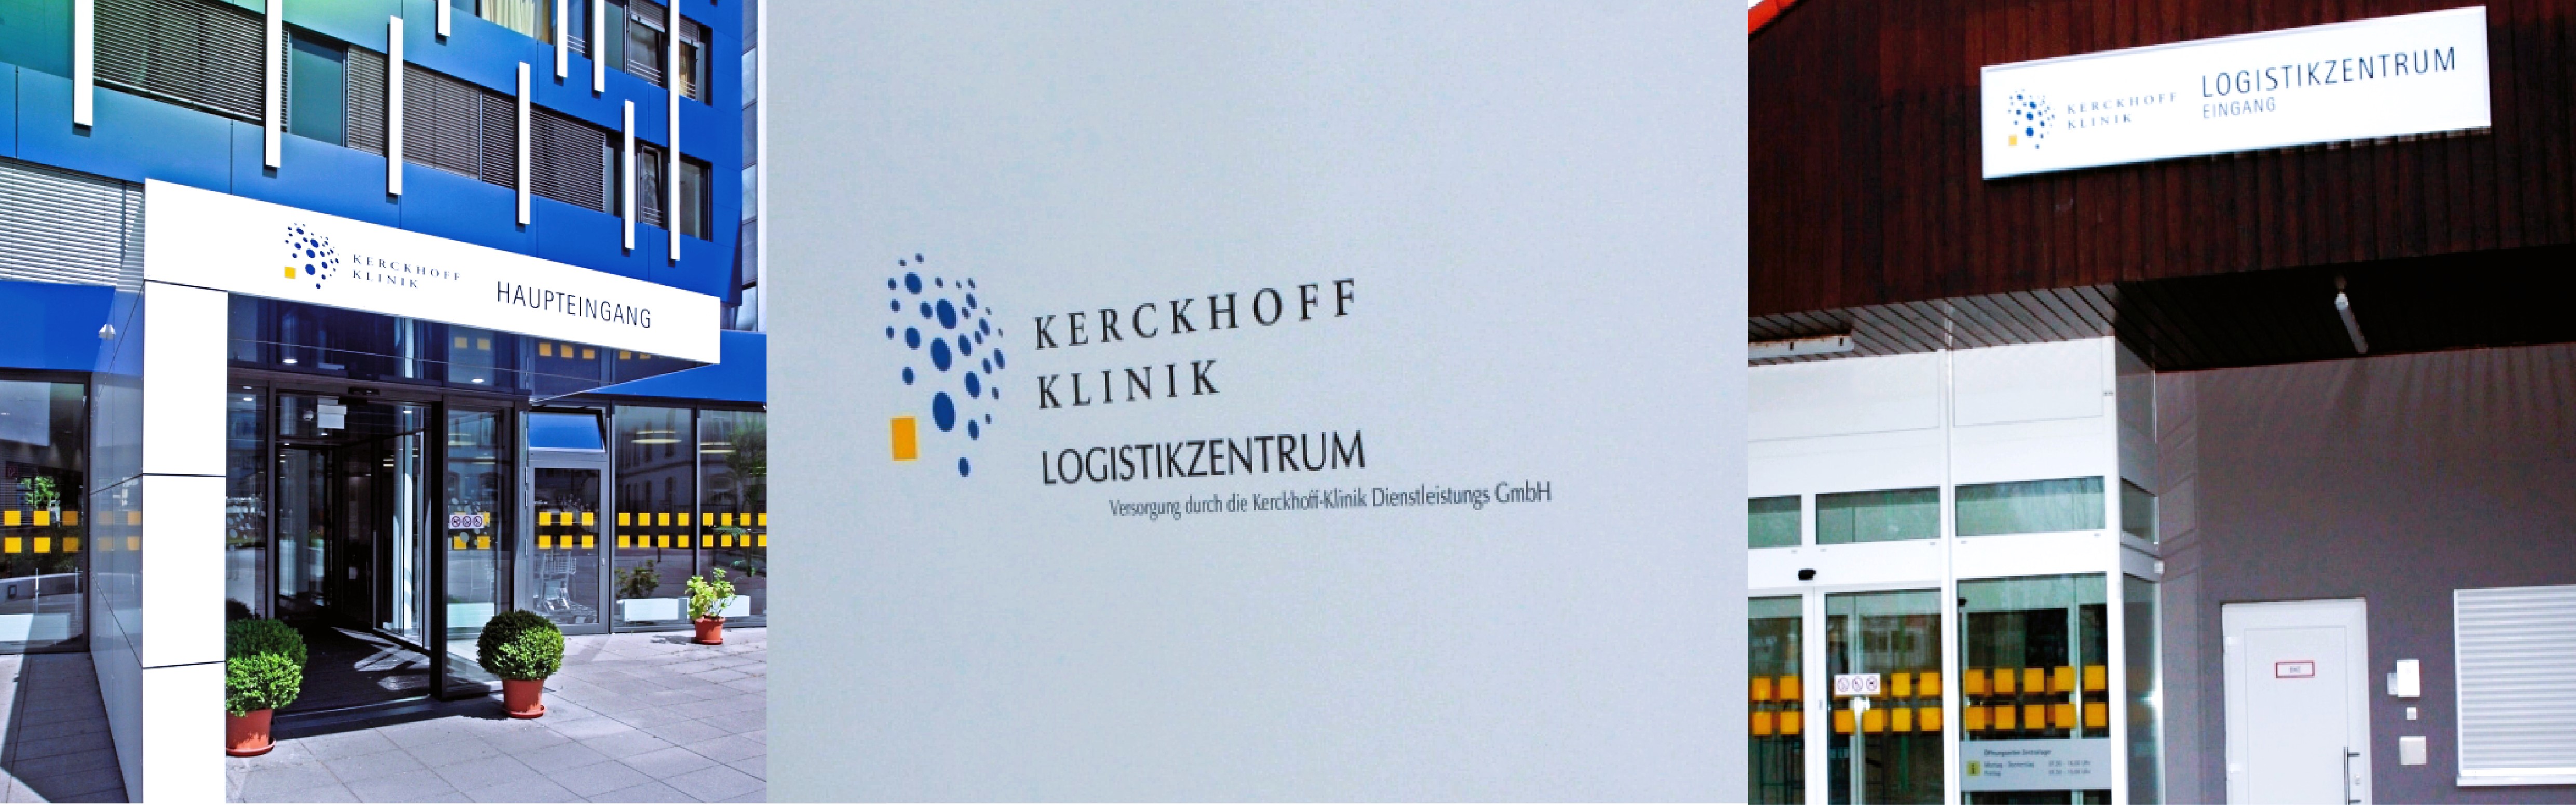 Logistikzentrum der Kerckhoff-Klinik